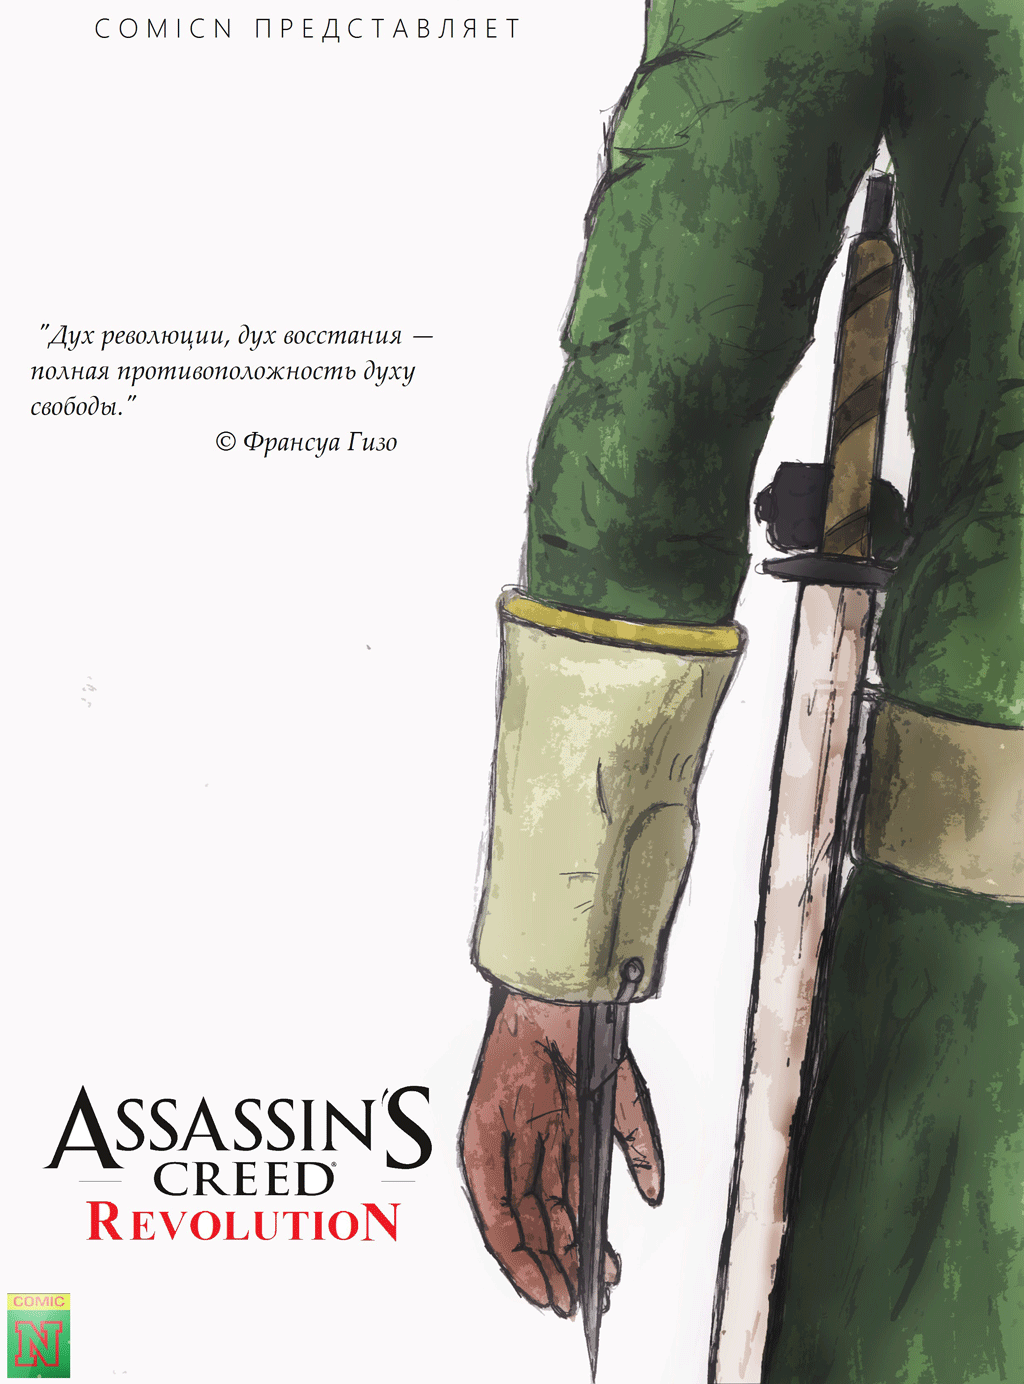 Комикс Assassins Creed Revolution: выпуск №1